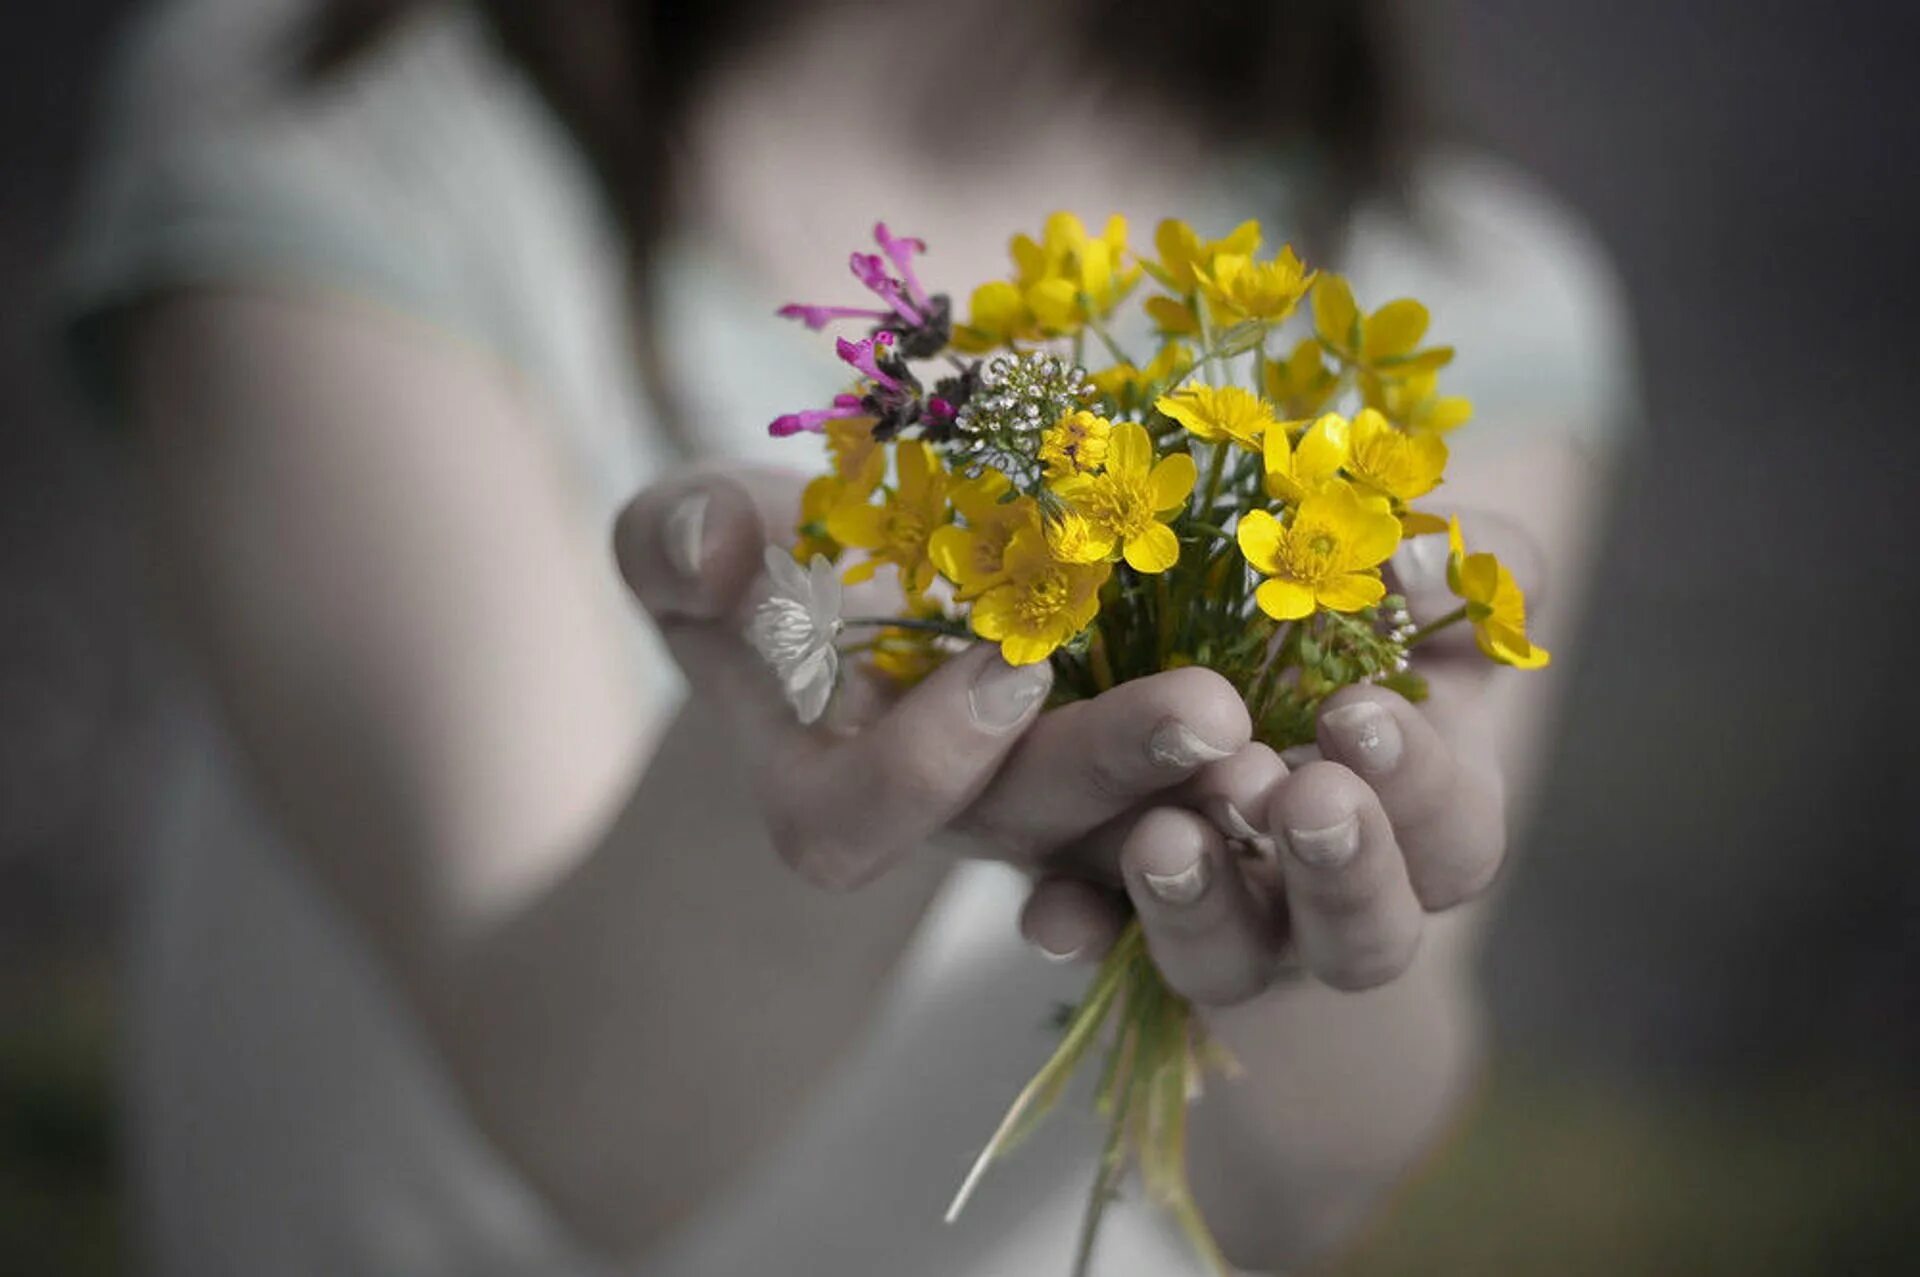 Цветы в ладонях. Цветы радости. Цветы радости жизни. Счастье в руках. Всегда есть время быть счастливой